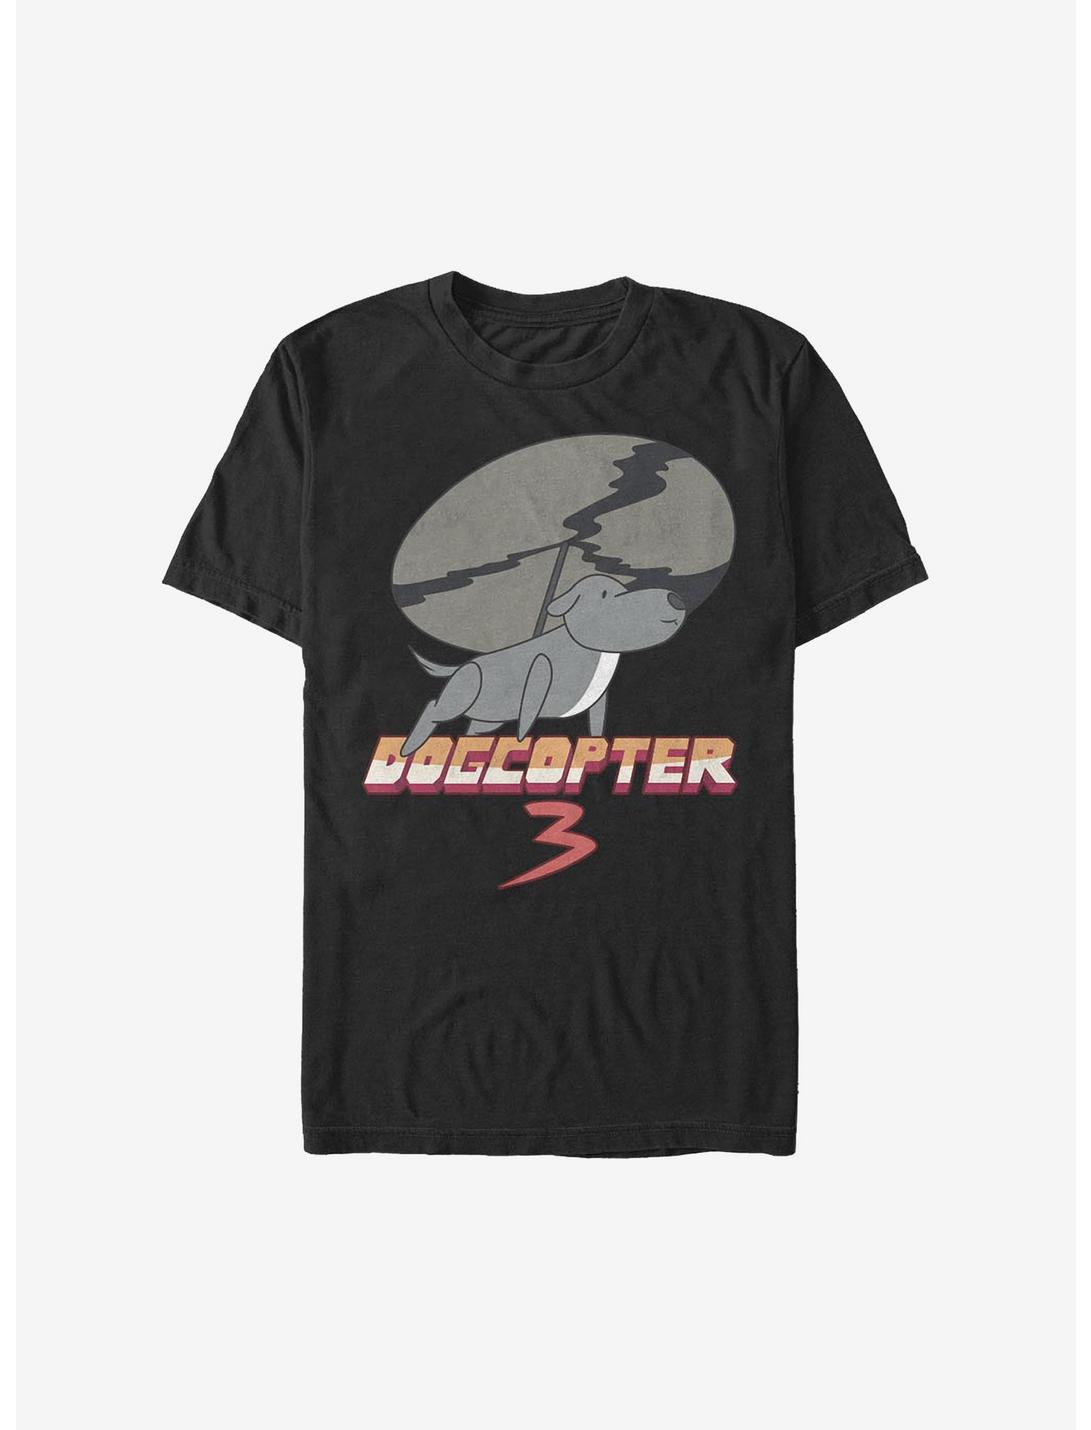 Steven Universe Dogcopter T-Shirt, BLACK, hi-res